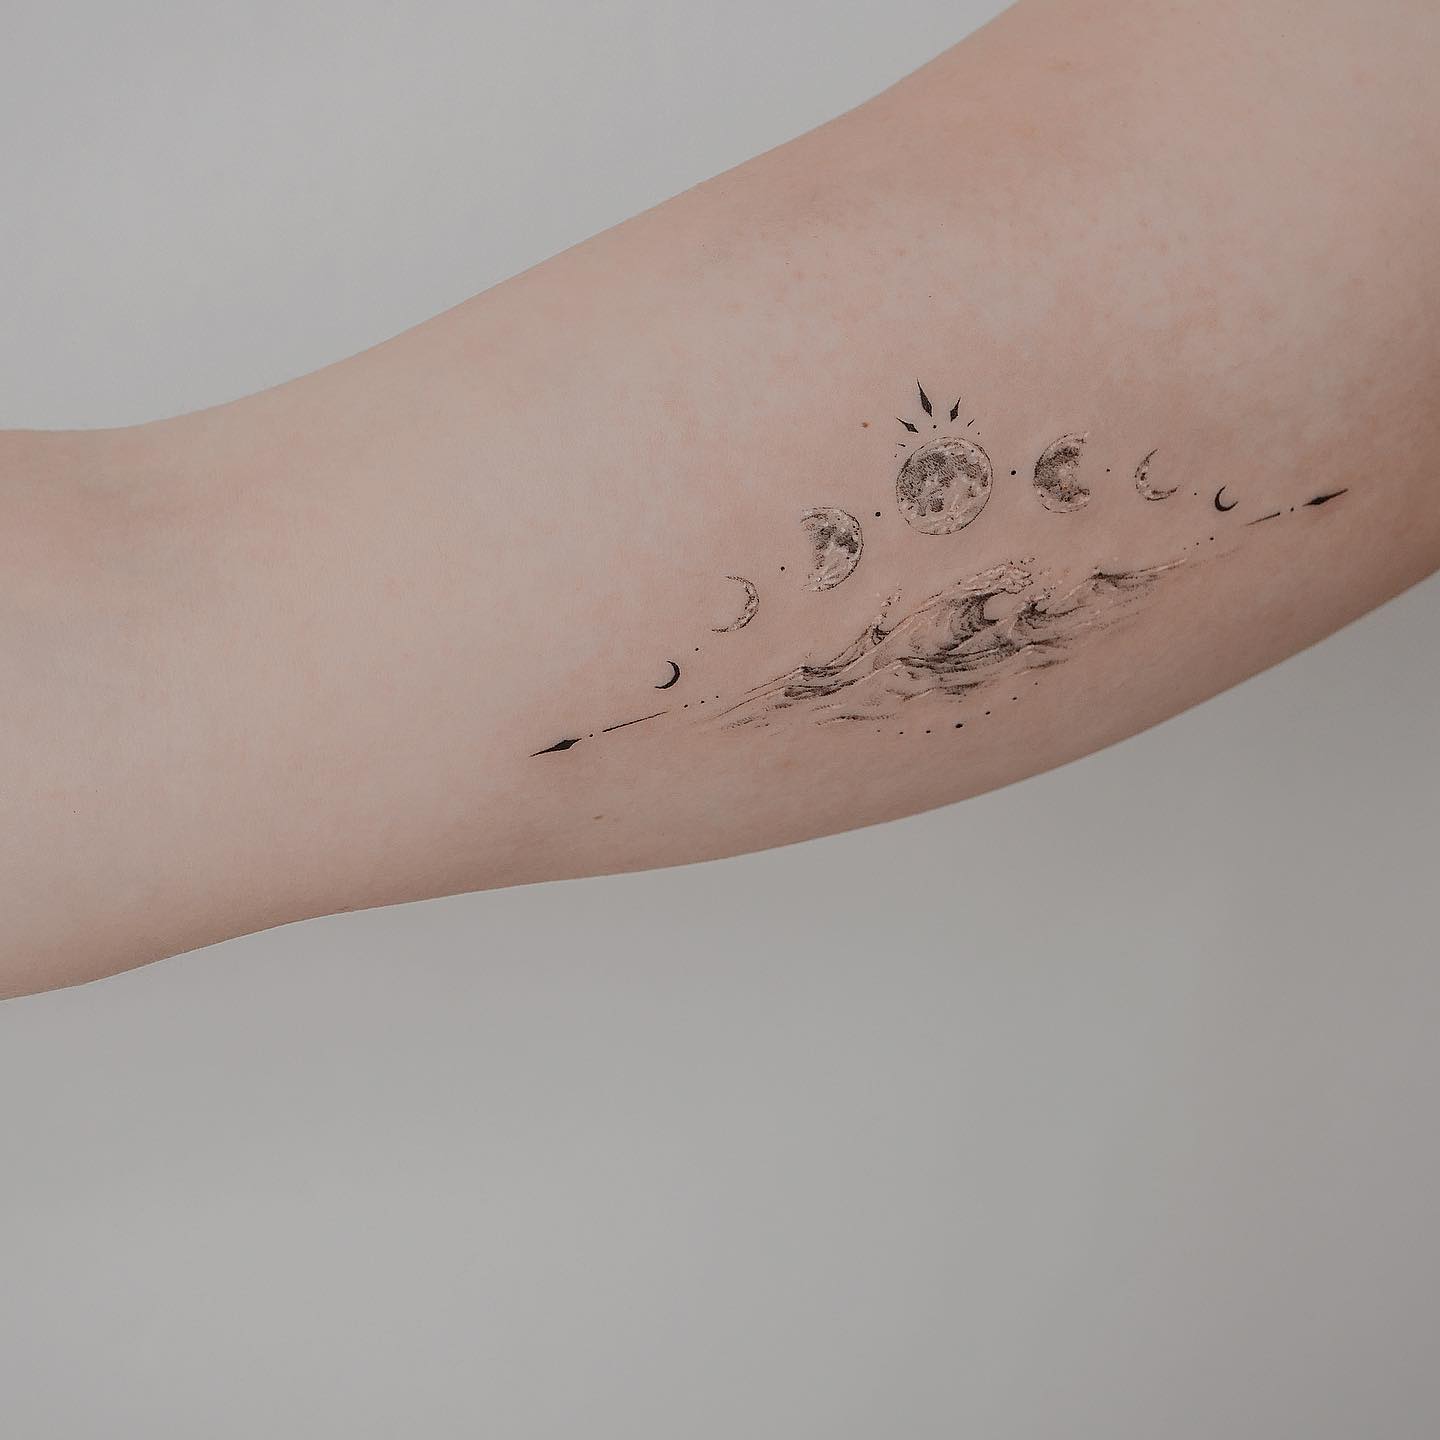 Waves tattoo ideas for women by lucas.dauner